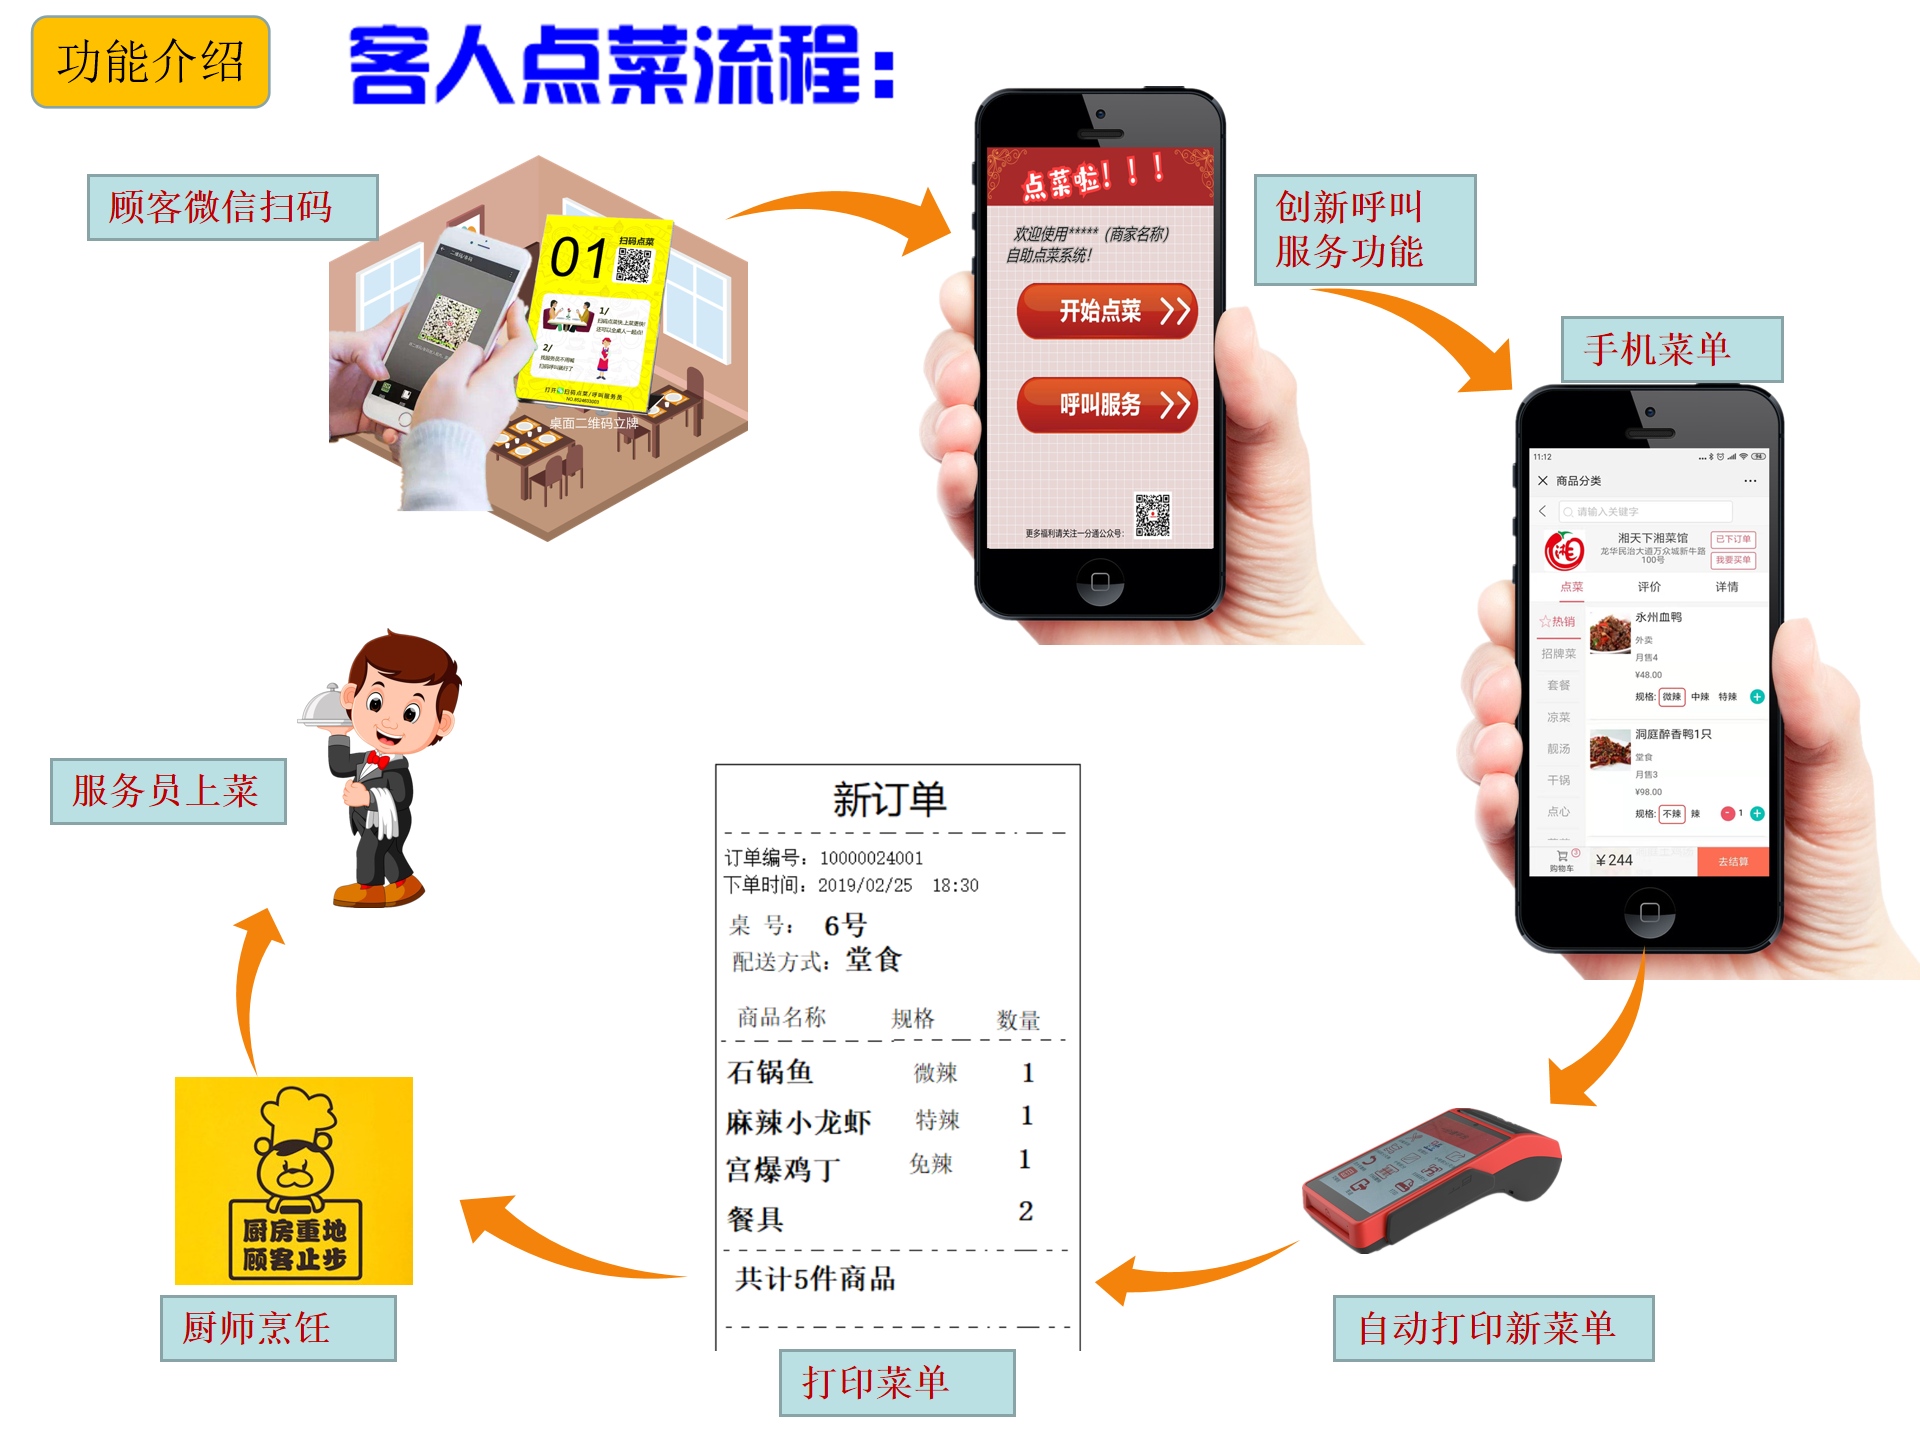 高品质连锁会员管理系统_一卡通管理系统相关-深圳市中贤在线技术有限公司